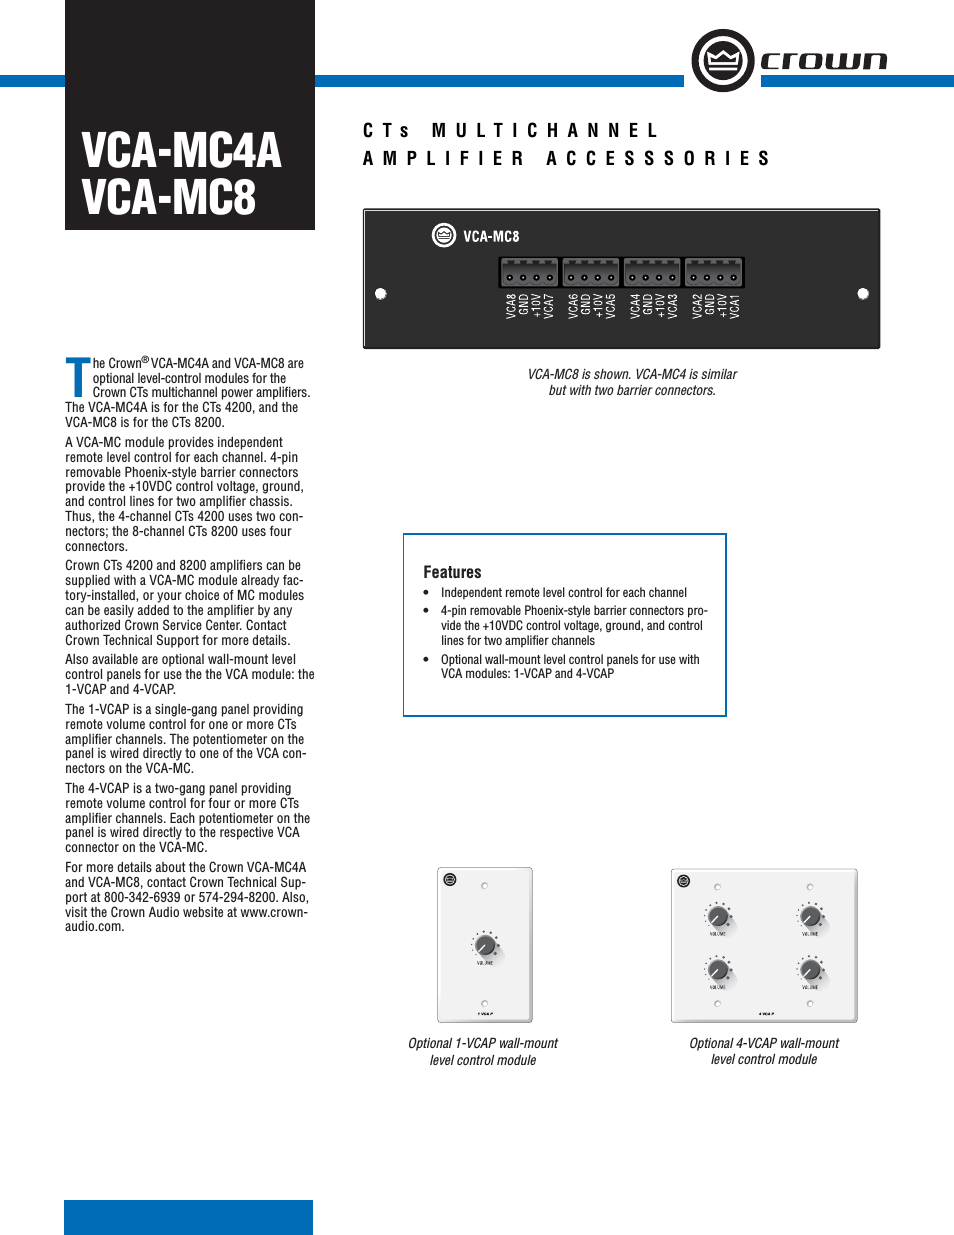 VCA-MC8